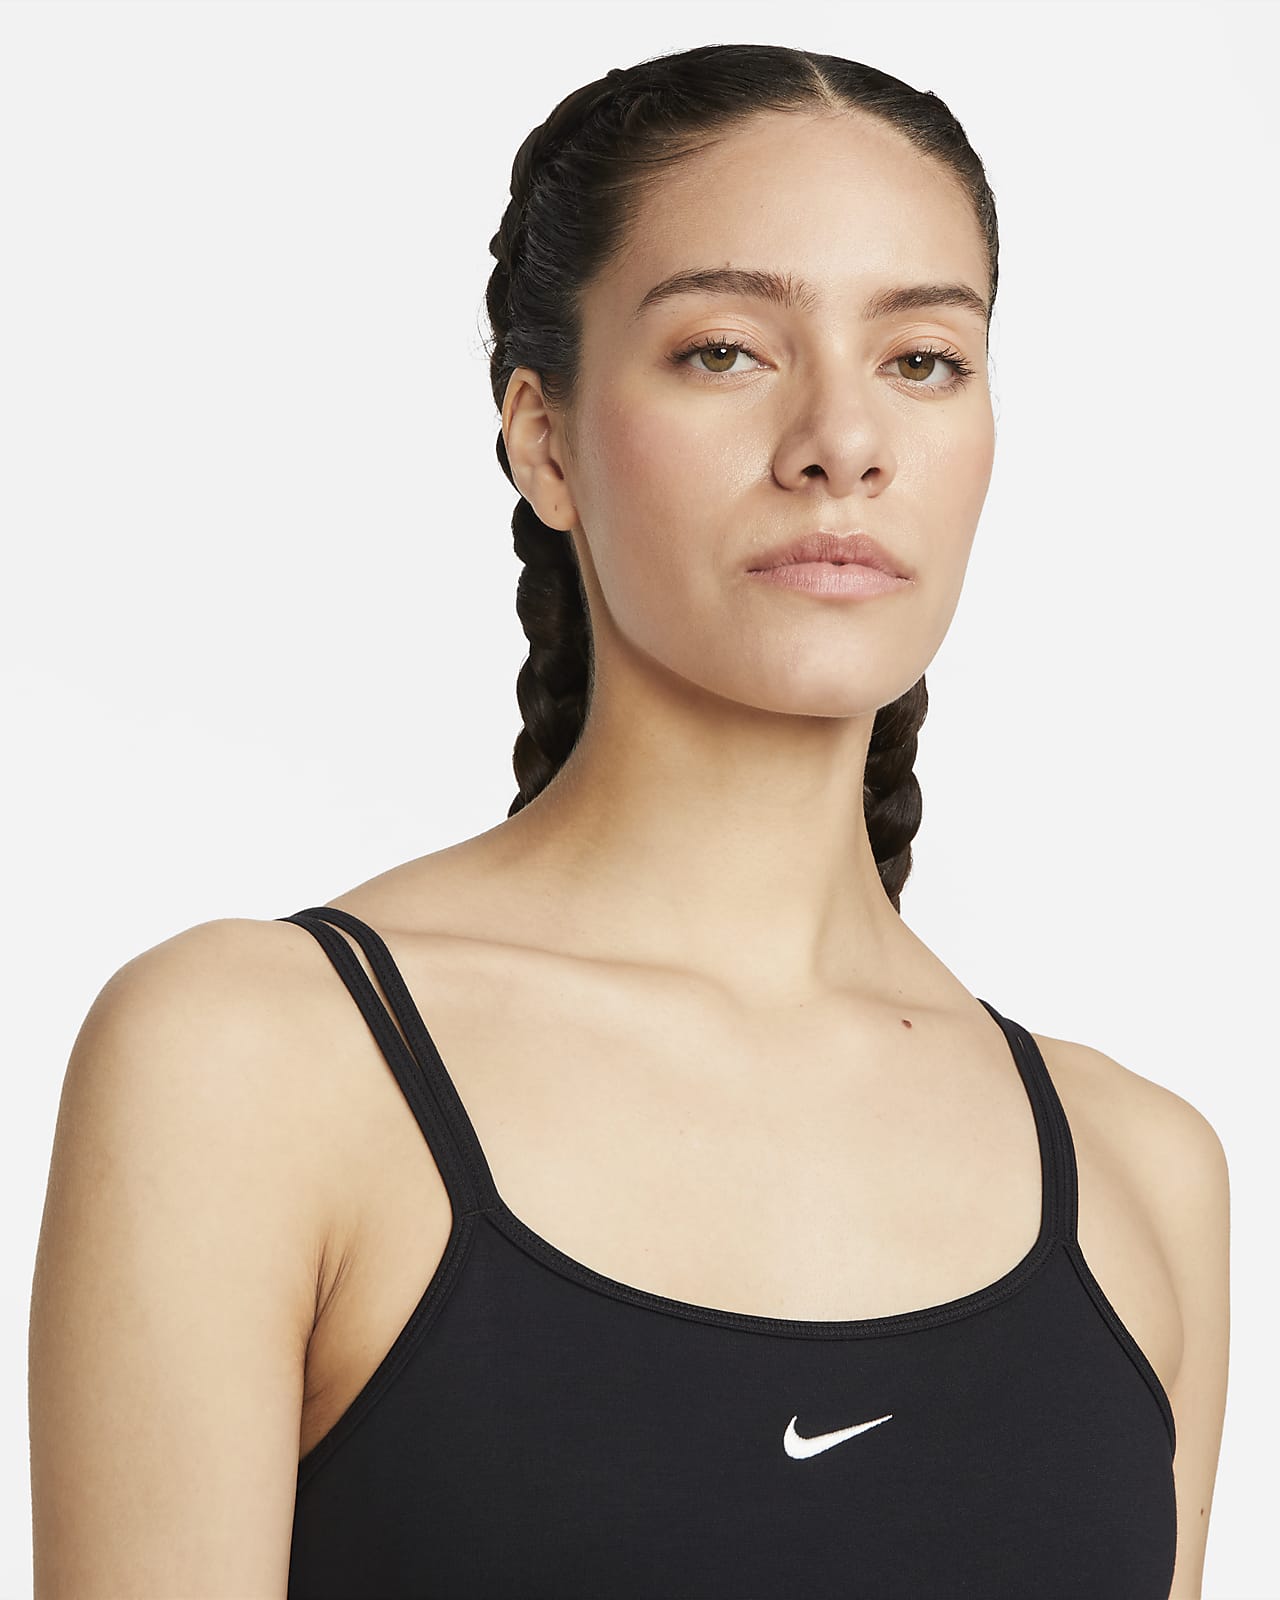 Women's Bodysuits. Nike CA